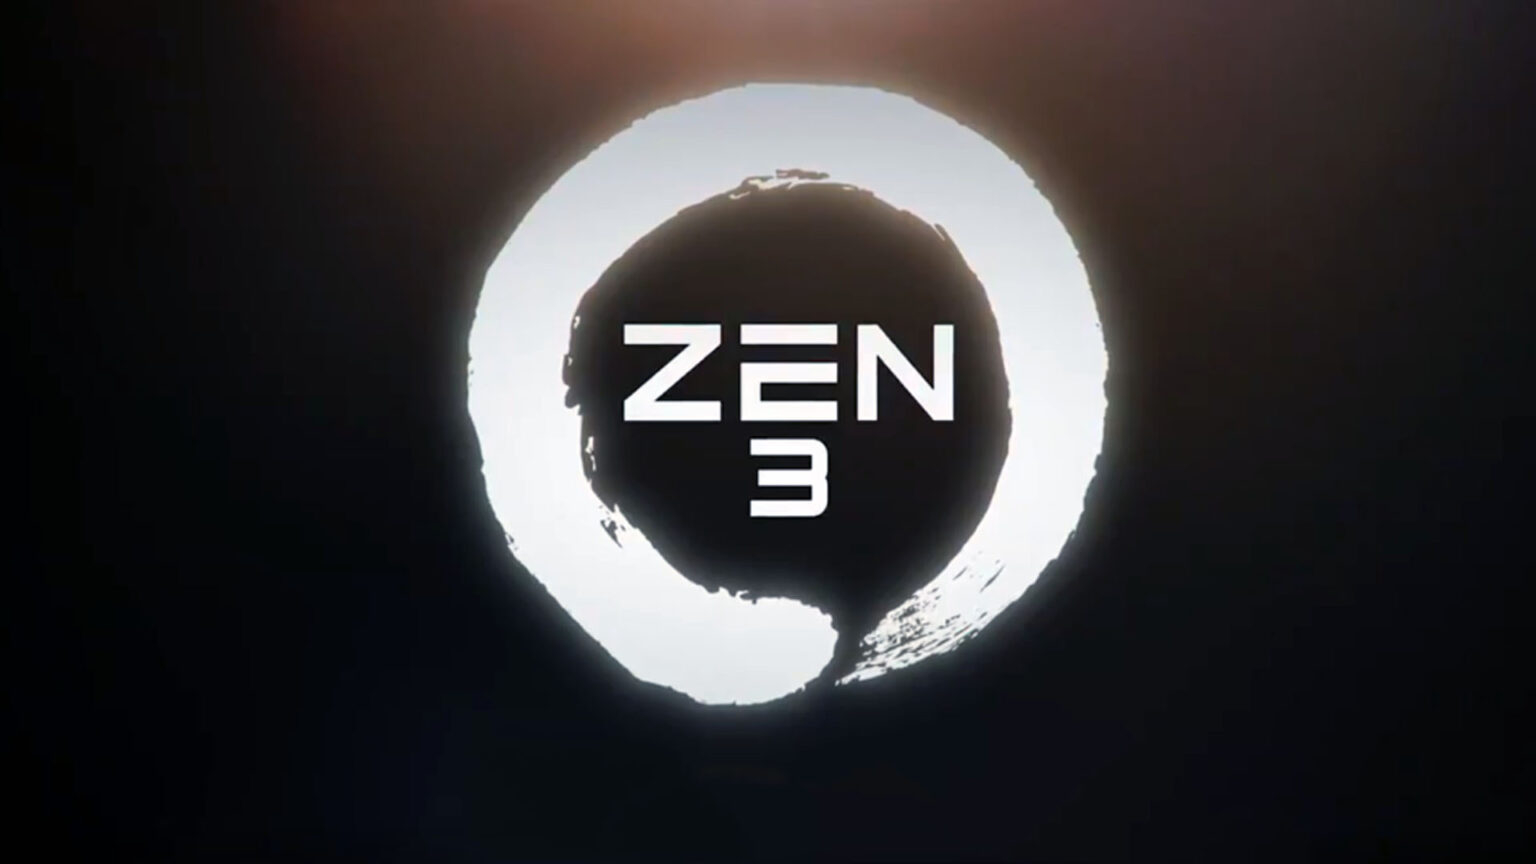 zen 3 architecture